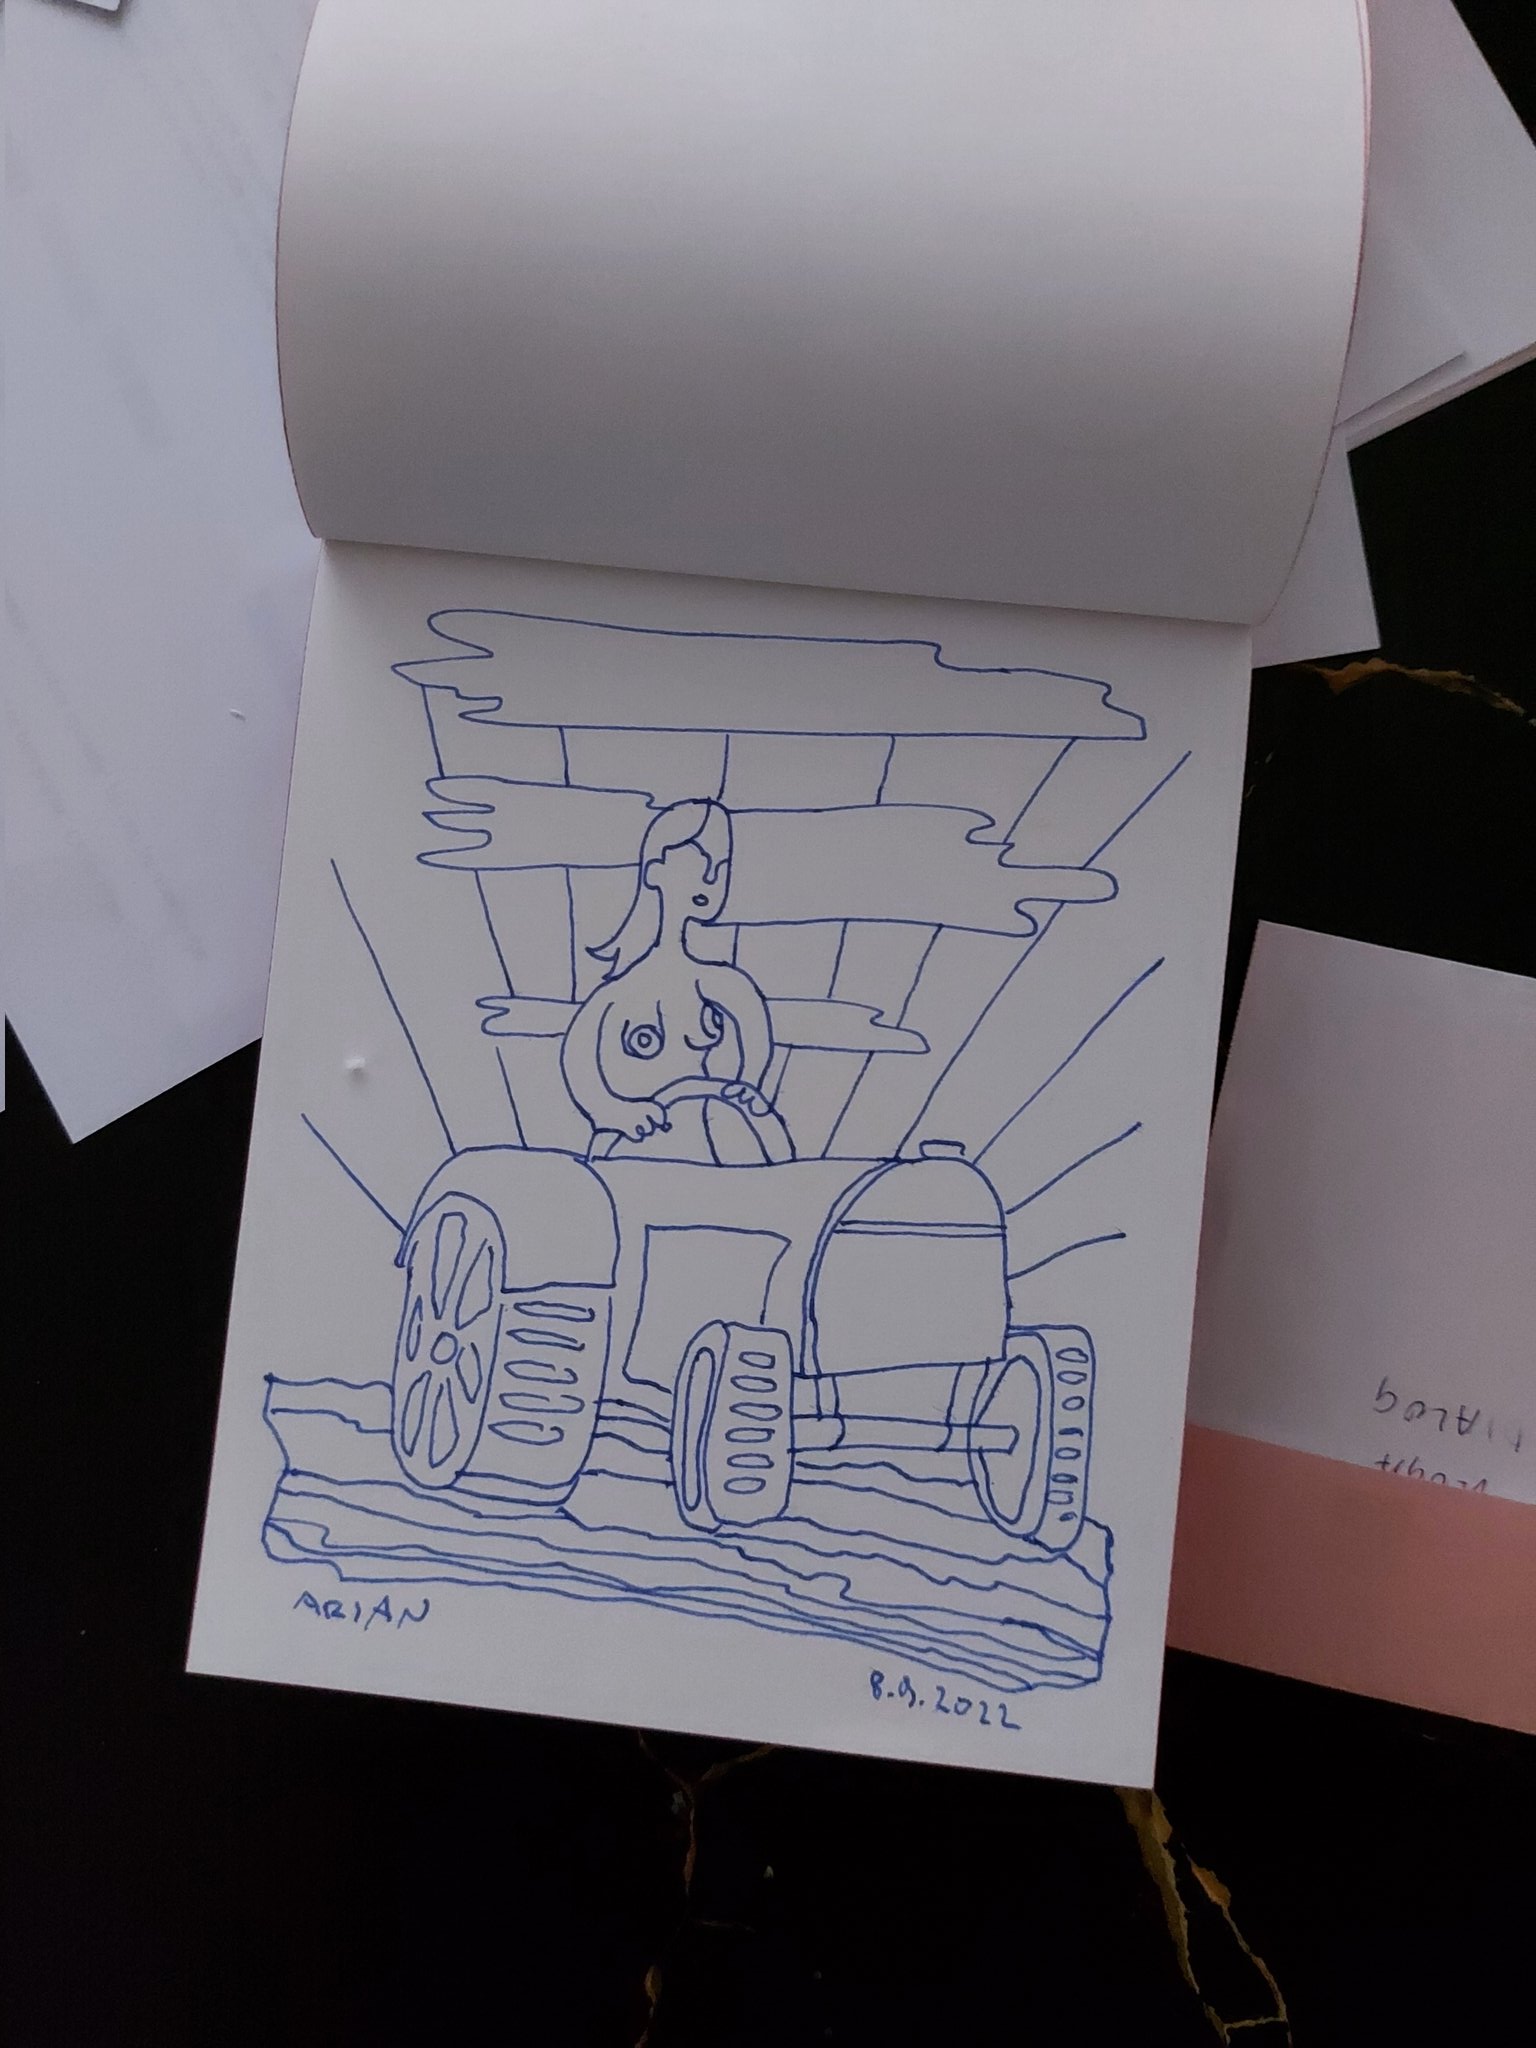 “Razmišljam tudi o domoljubnem traktor ciklu …” – Slikar Arjan Pregl, ki s svojimi skicami in slikami jezi in vznemirja Aleša Hojsa & desni del tvitosfere, tokrat “klonil” in pripravlja “domoljubni traktor cikel”